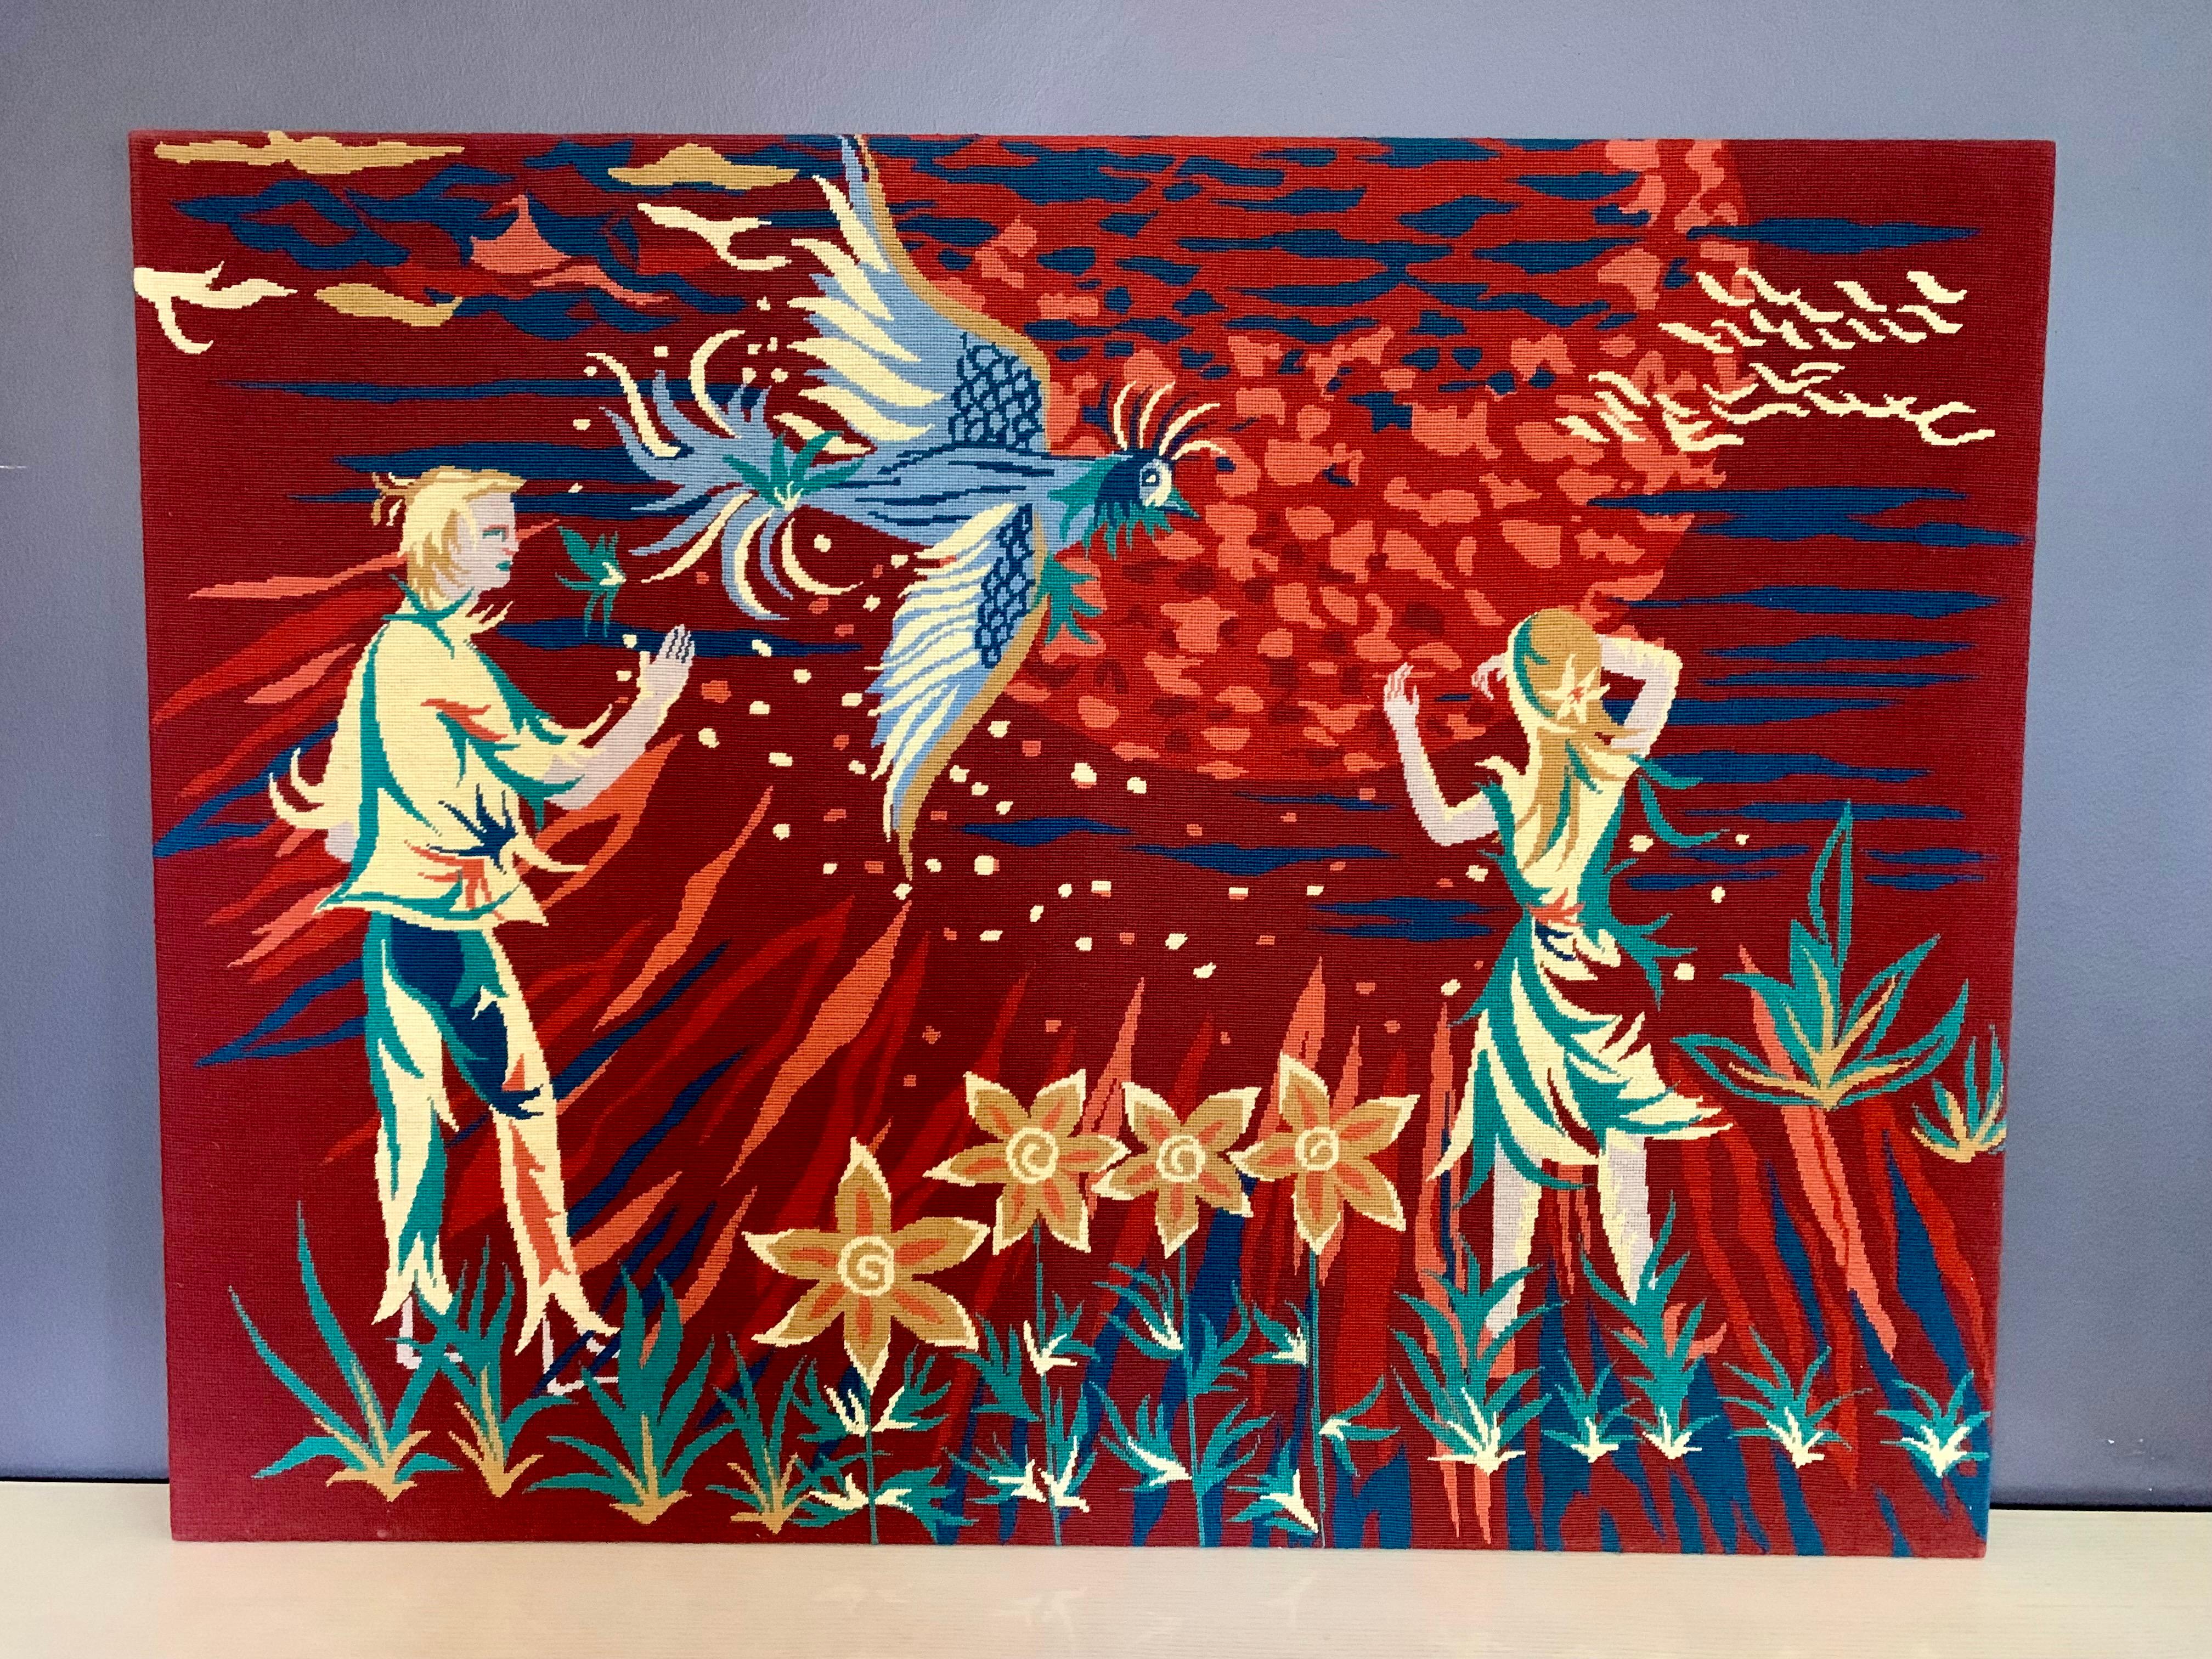 Tapisserie vintage française colorée, encadrée au dos, dans de merveilleuses couleurs chaudes, fil de laine - tenture murale brodée - par Jean Lurçat. Le motif s'appelle 